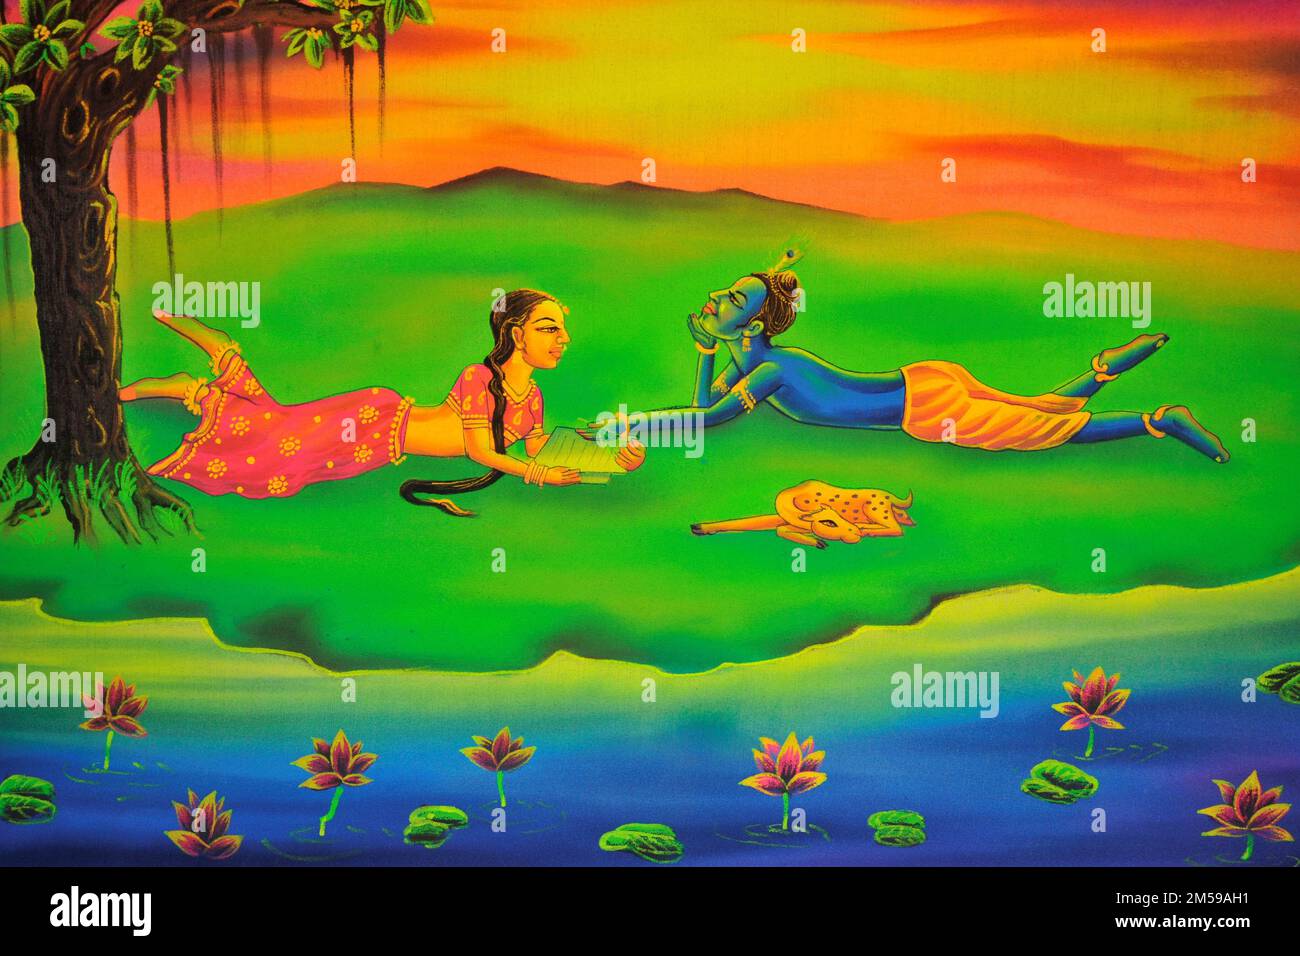 Radha Krishna playing garden artwork painting Stock Photo